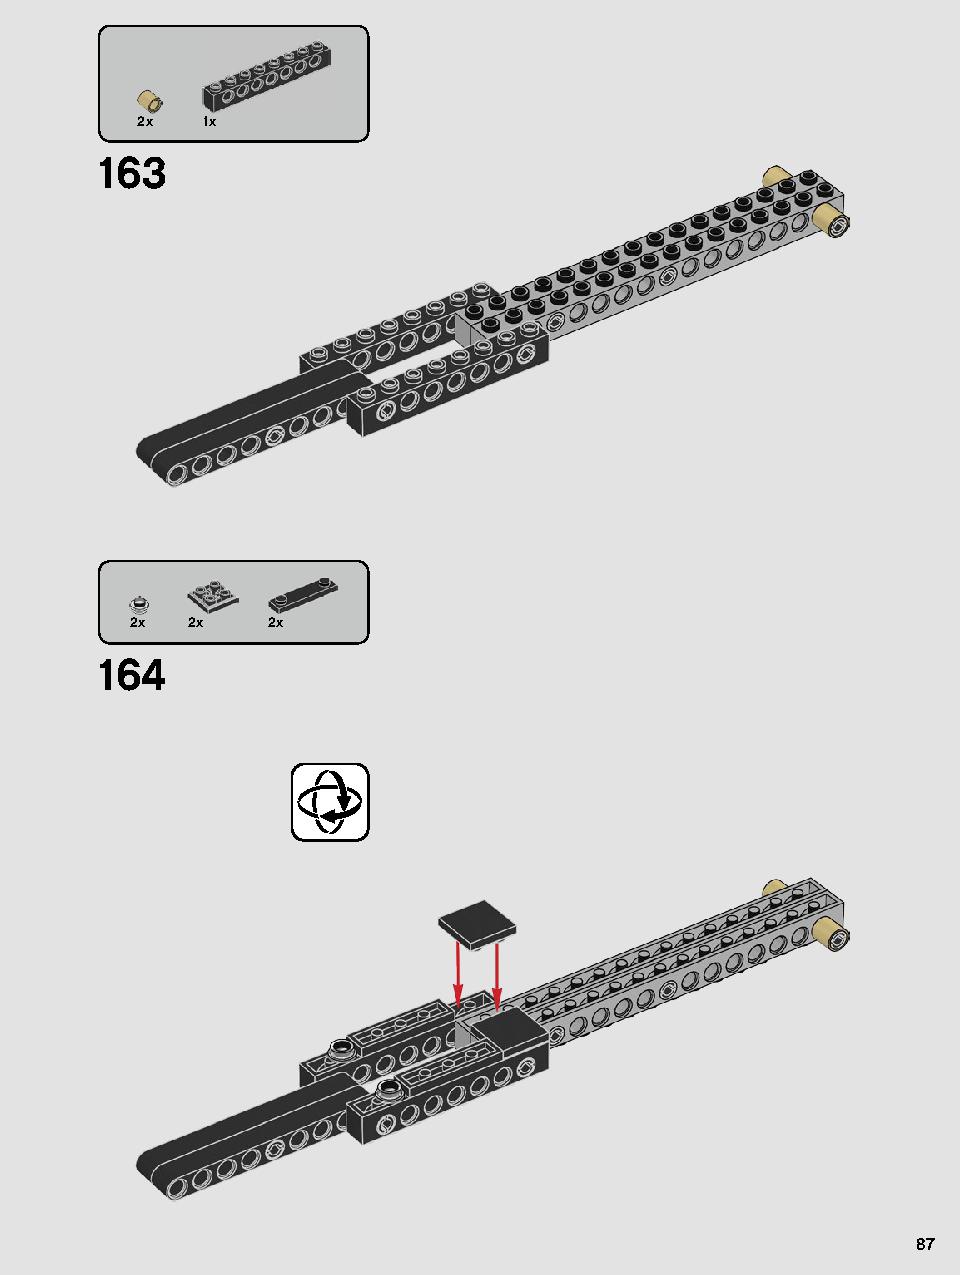 스타워즈 카일로 렌의 셔틀™ 75256 레고 세트 제품정보 레고 조립설명서 87 page